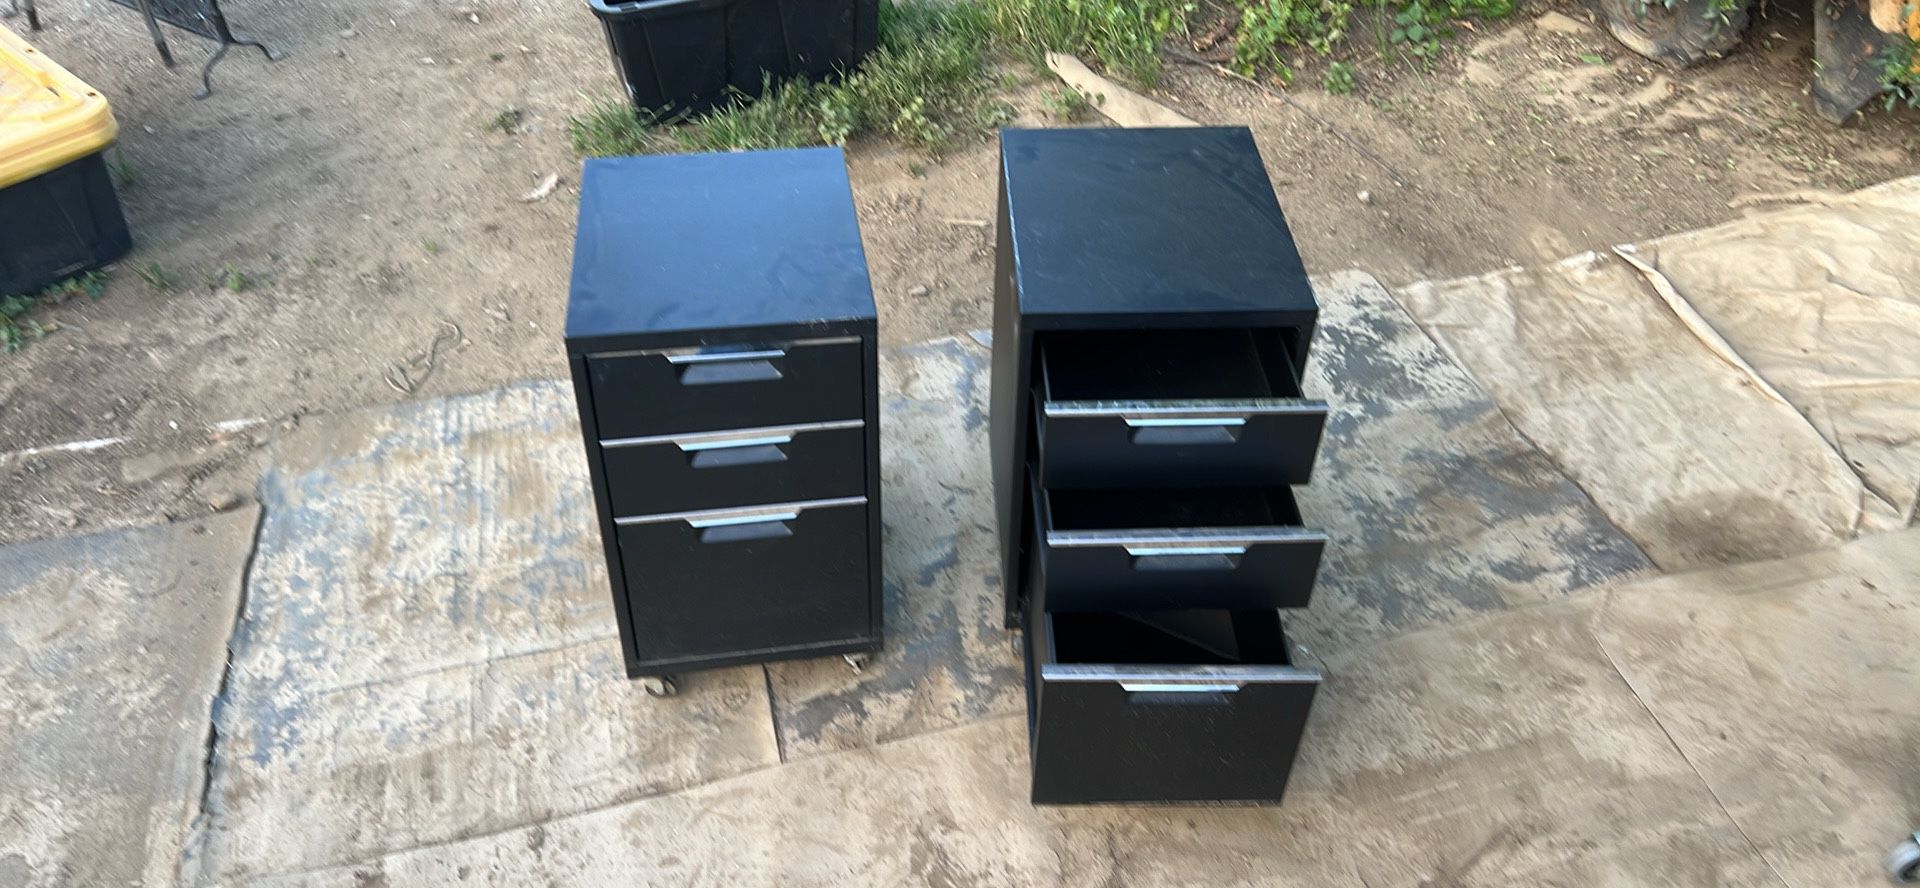 2 havenly TPS Black Metal 3-Drawer File Cabinet on Wheels